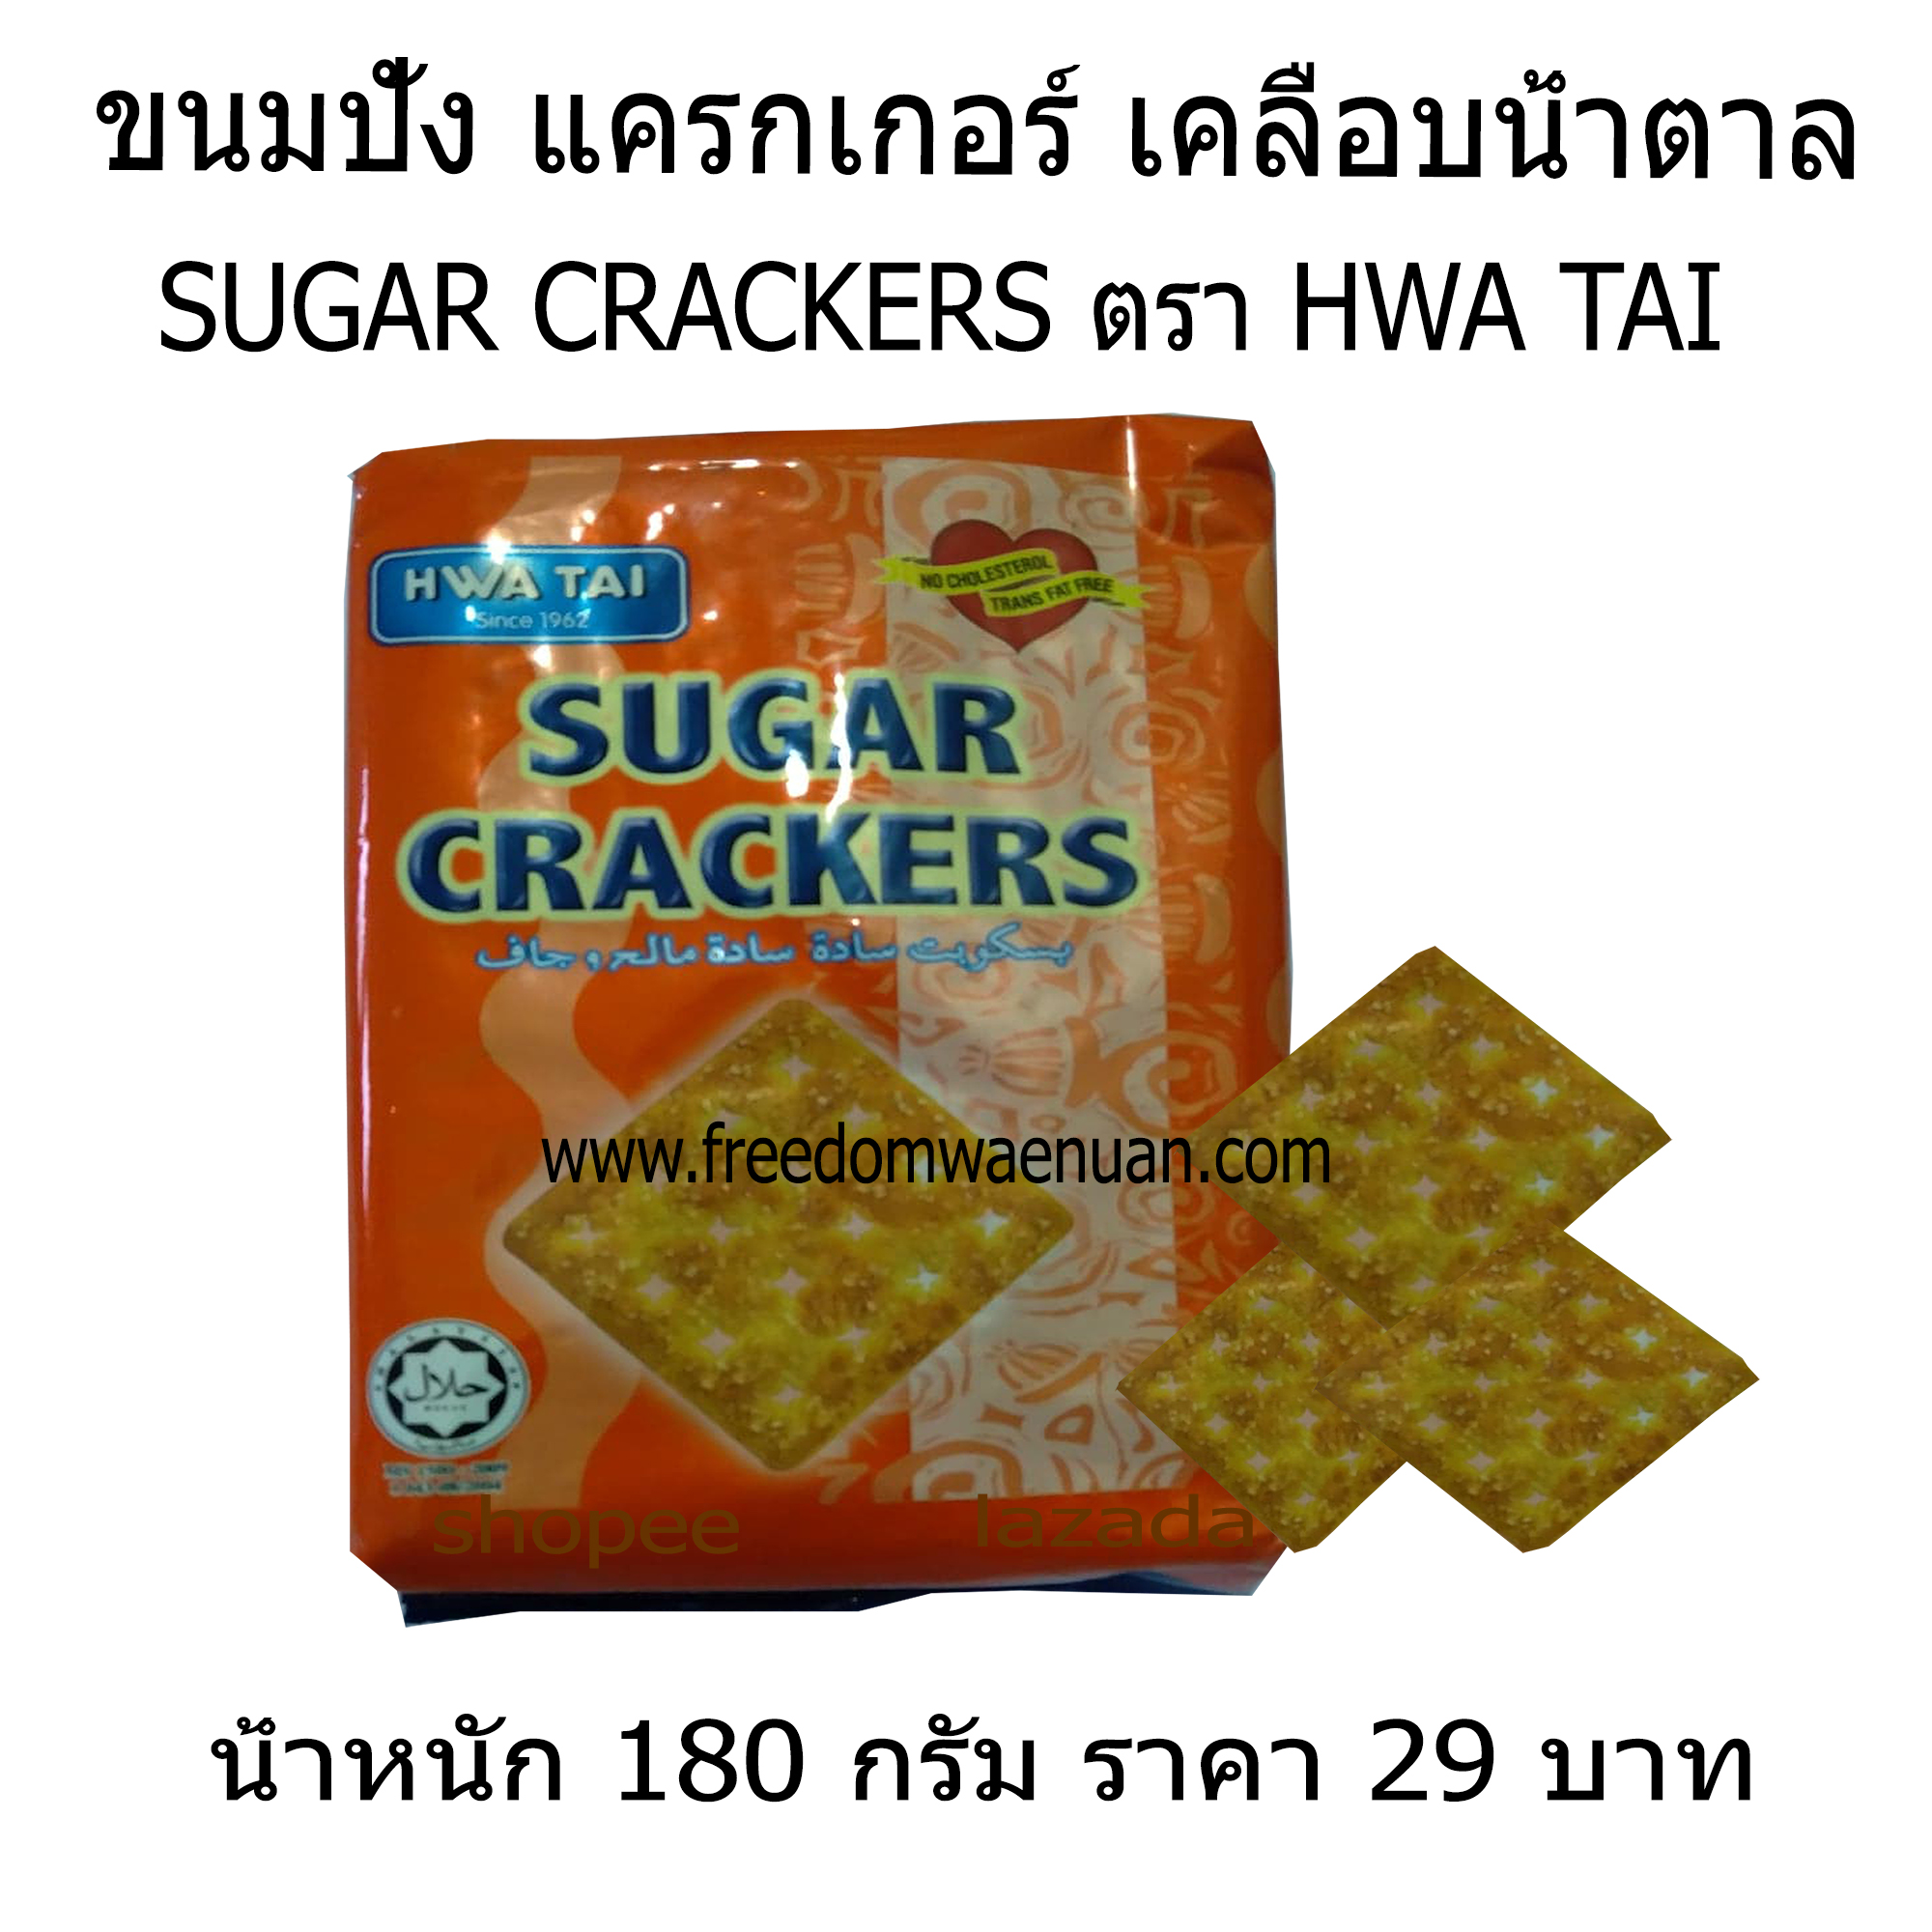 ขนมปัง แครกเกอร์ เคลือบน้ำตาล ห่อสีส้ม SUGAR CRACKERS ตรา HWA TAI ราคา 29 บาท น้ำหนัก 180 กรัม